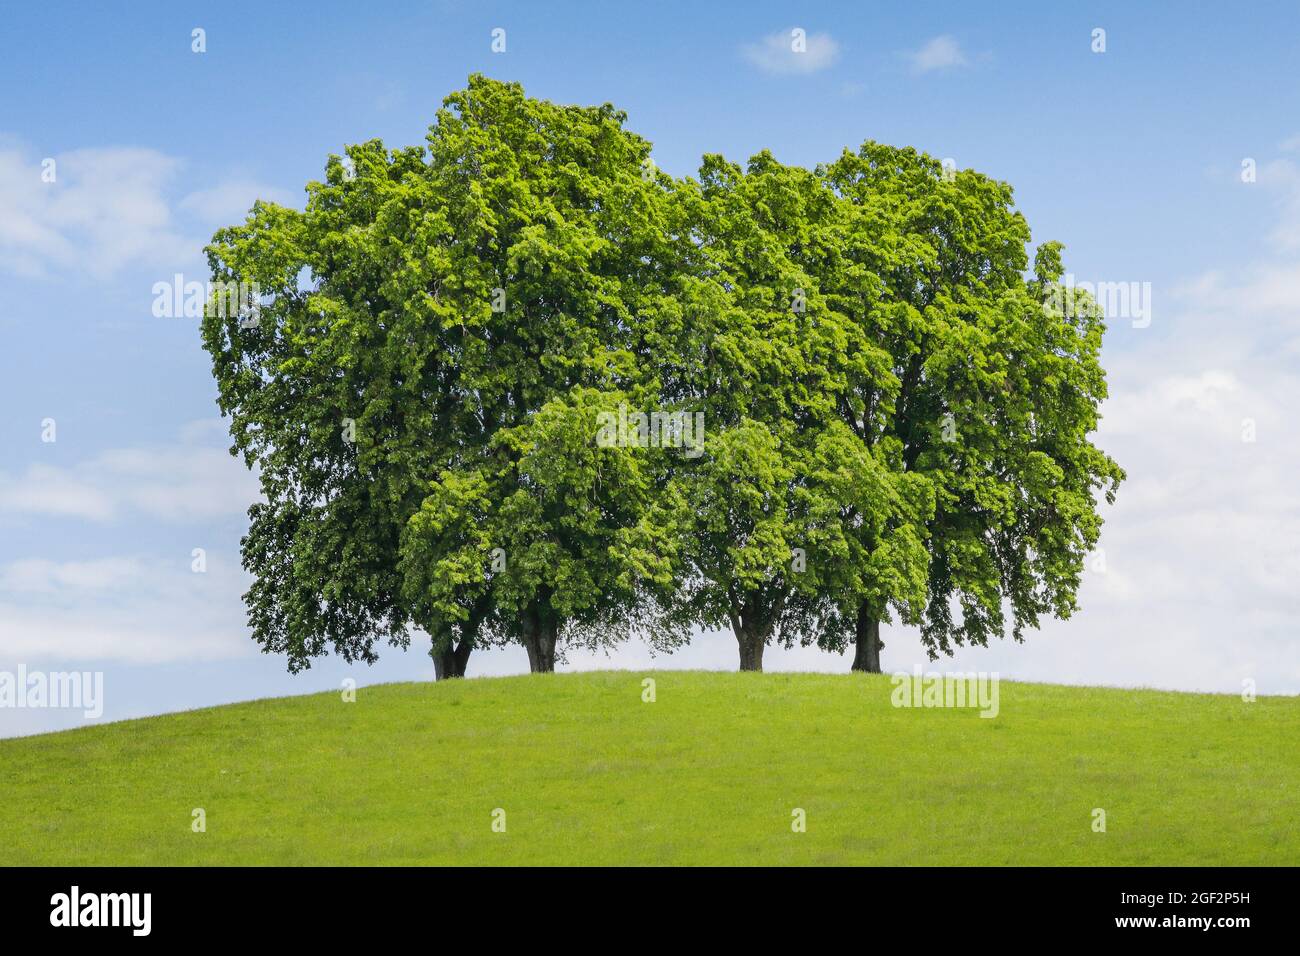 Cal de hoja pequeña, linden littleleaf, linden de hoja pequeña (Tilia cordata), cuatro grandes árboles de lima en una colina, Suiza, St. Gallen, Gossau Foto de stock